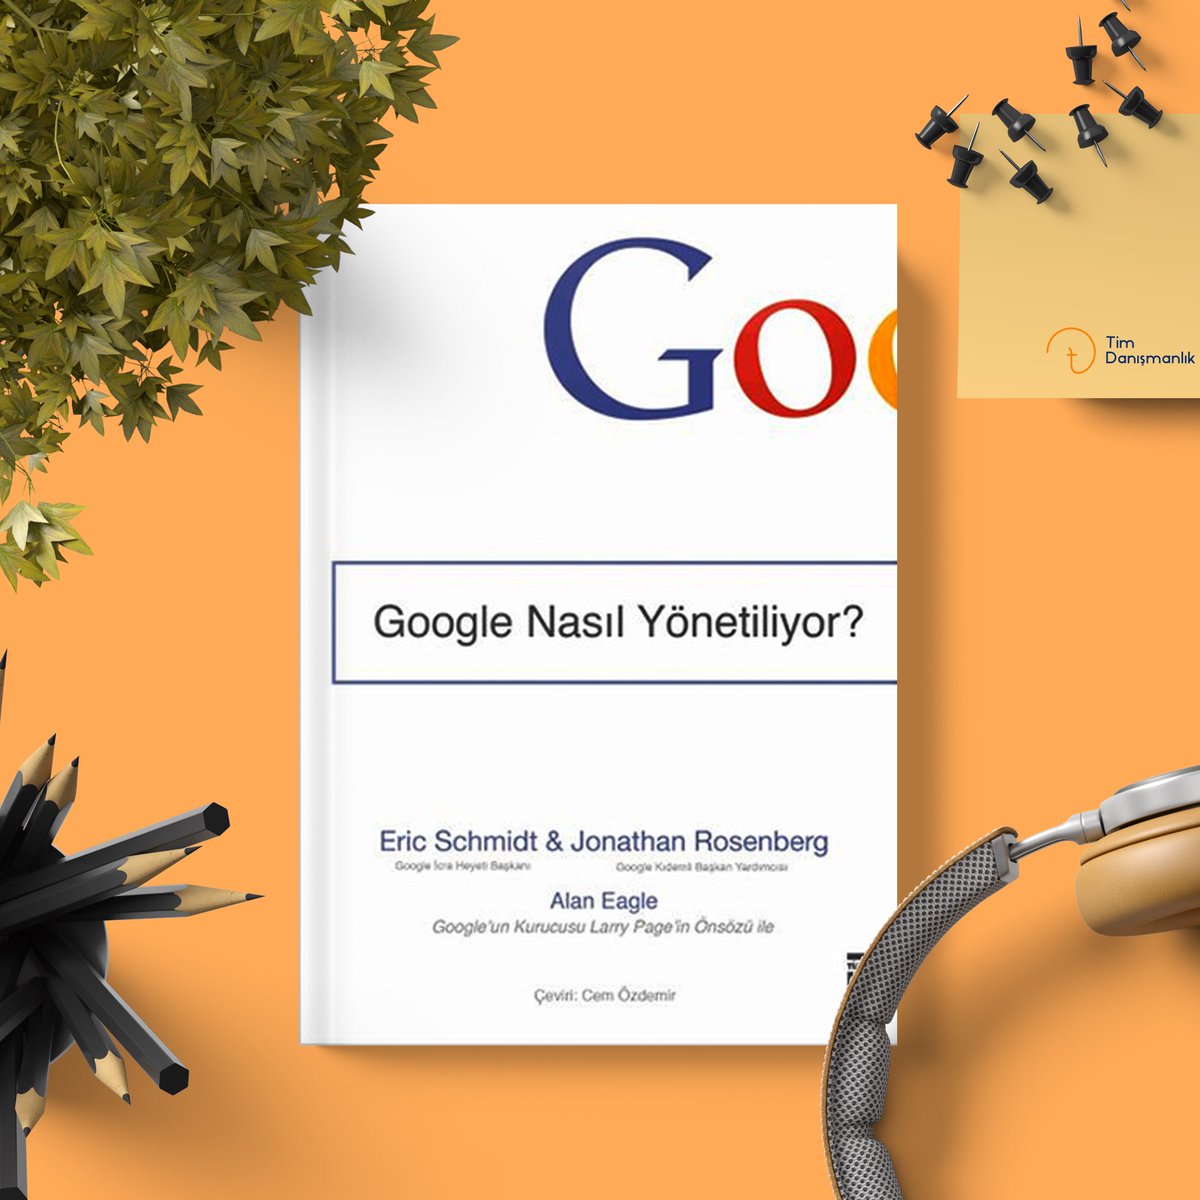 Bu haftanın kitap önerisi; 📚 Google Nasıl Yönetiliyor? kitabında Google’ın strateji, yetenek yönetimi, karar mekanizmaları, inovasyon gibi konularda nasıl yepyeni yaklaşımlar sunduğunu ve yönetildiğini daha yakından öğrenecek, birçok örnek olay ve ipuçlarıyla karşılaşacaksınız.